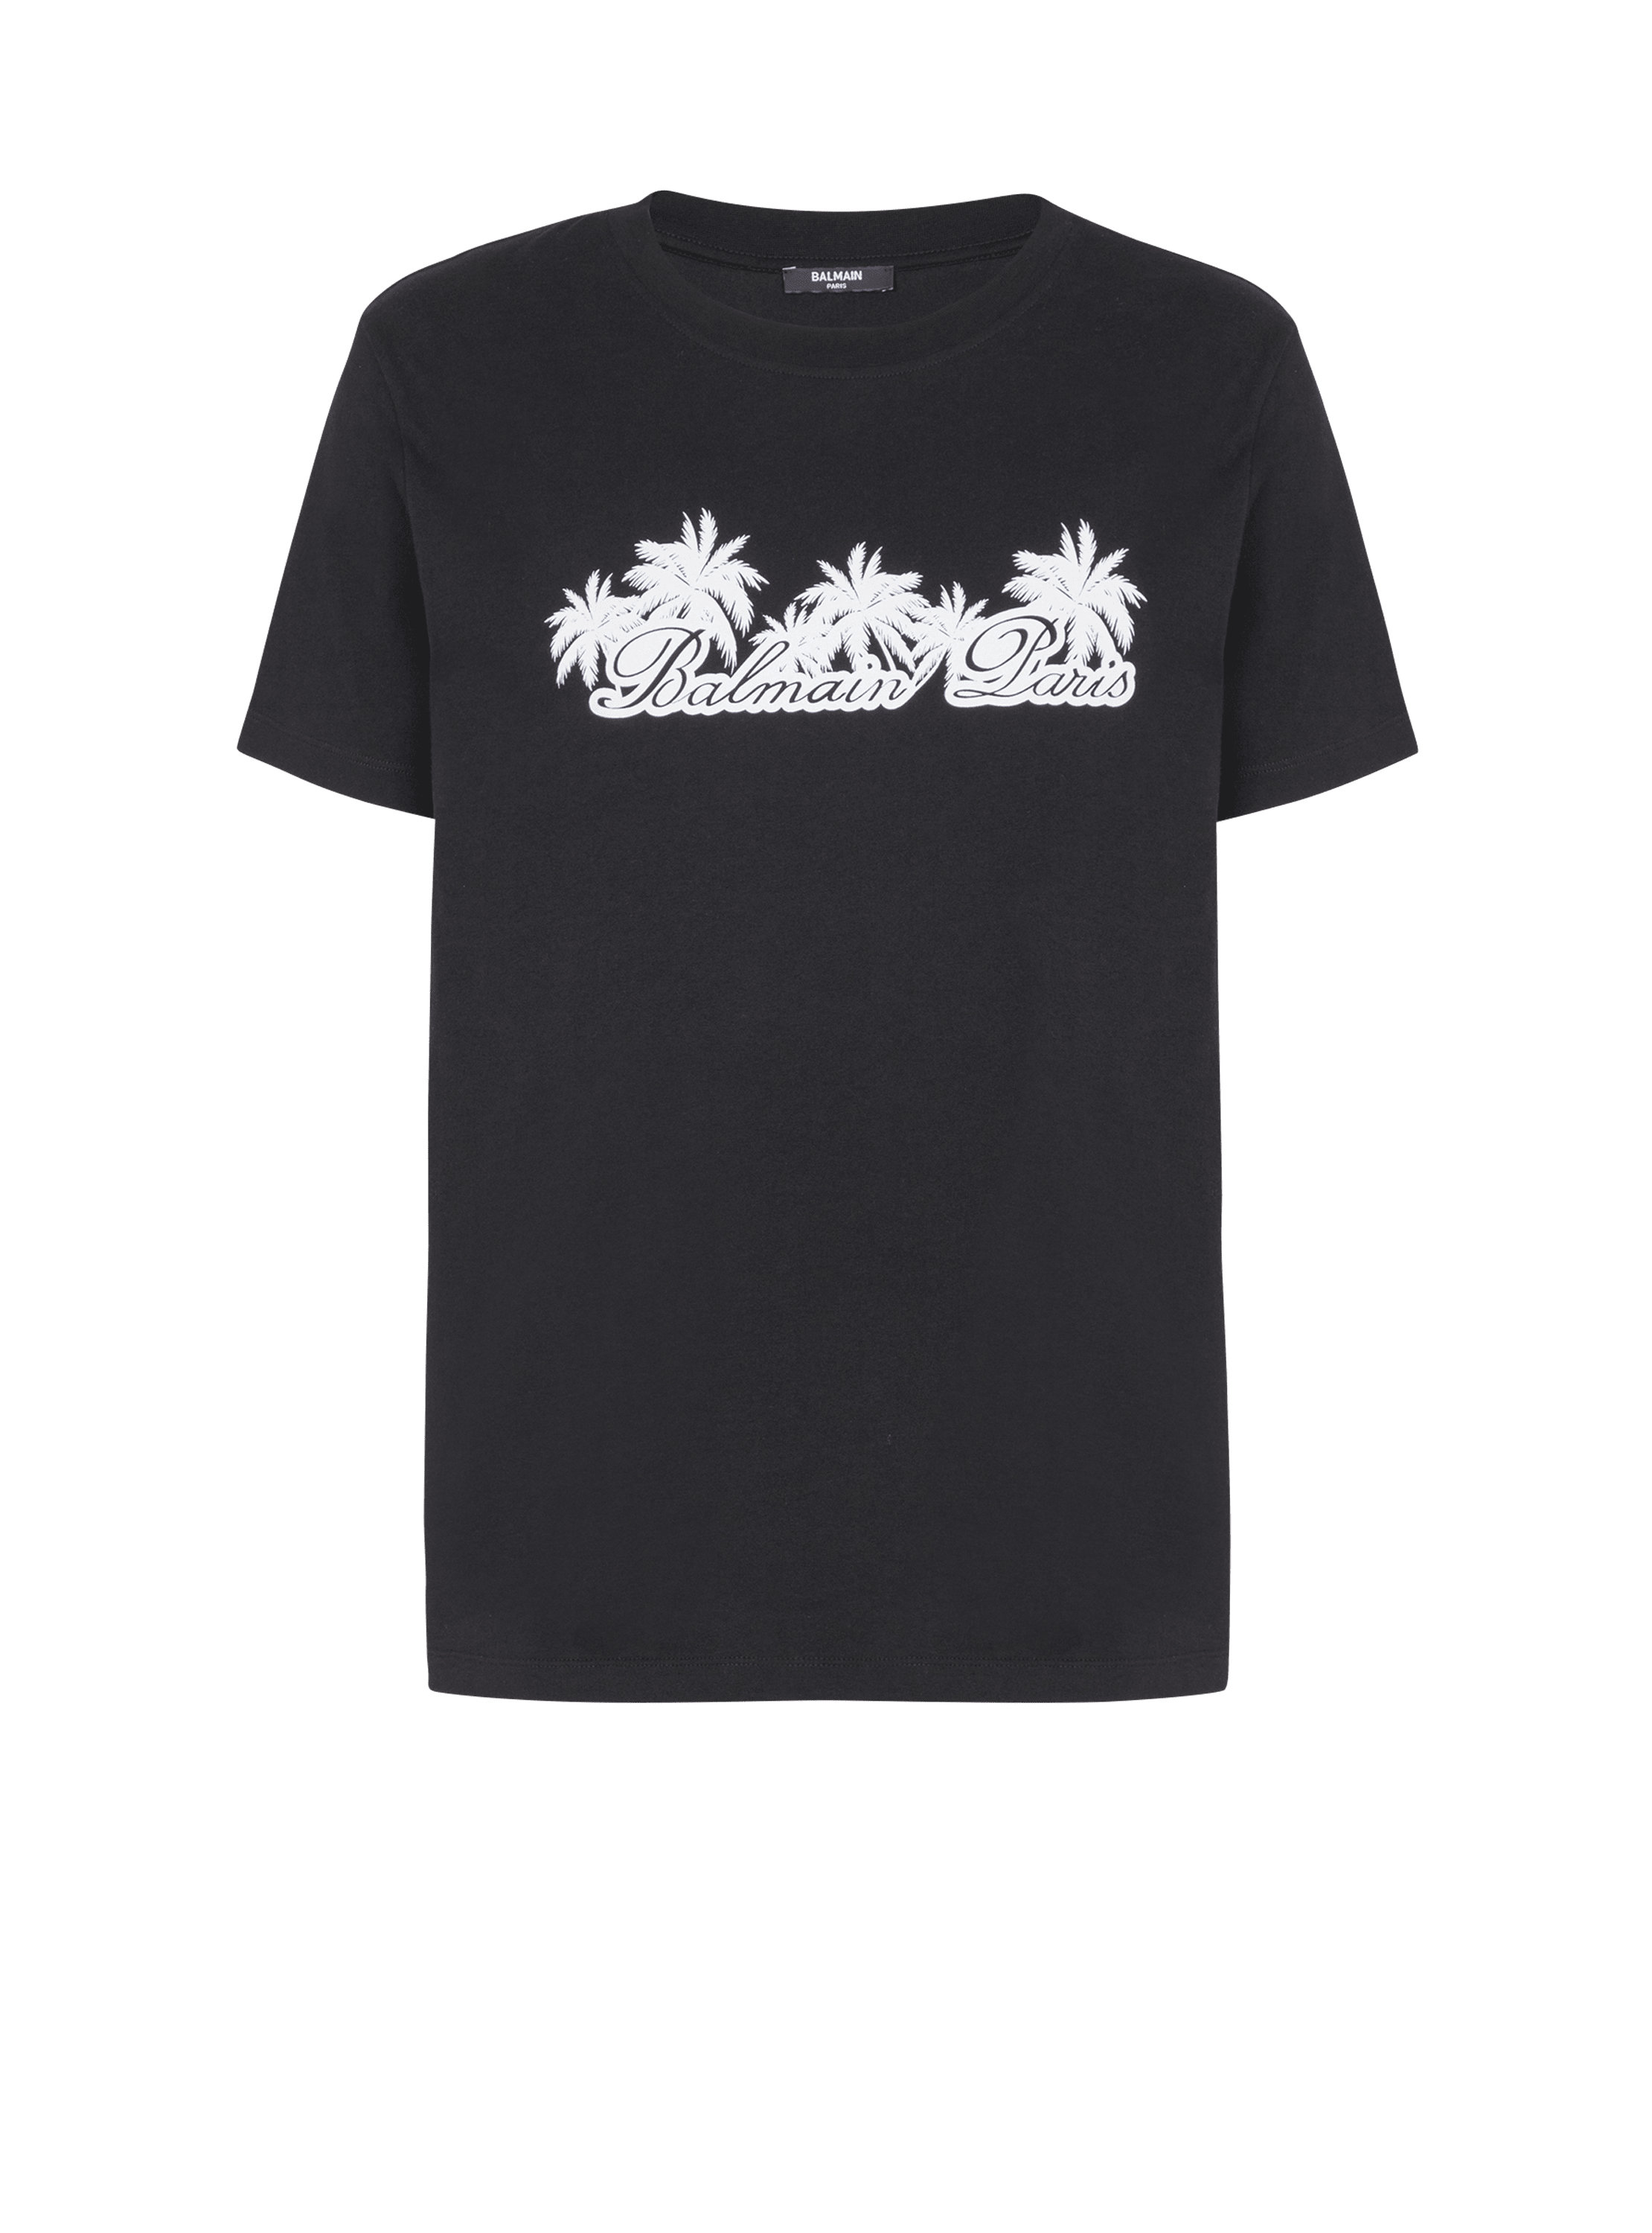 발망 시그니처 팜 트리 프린트 장식 티셔츠